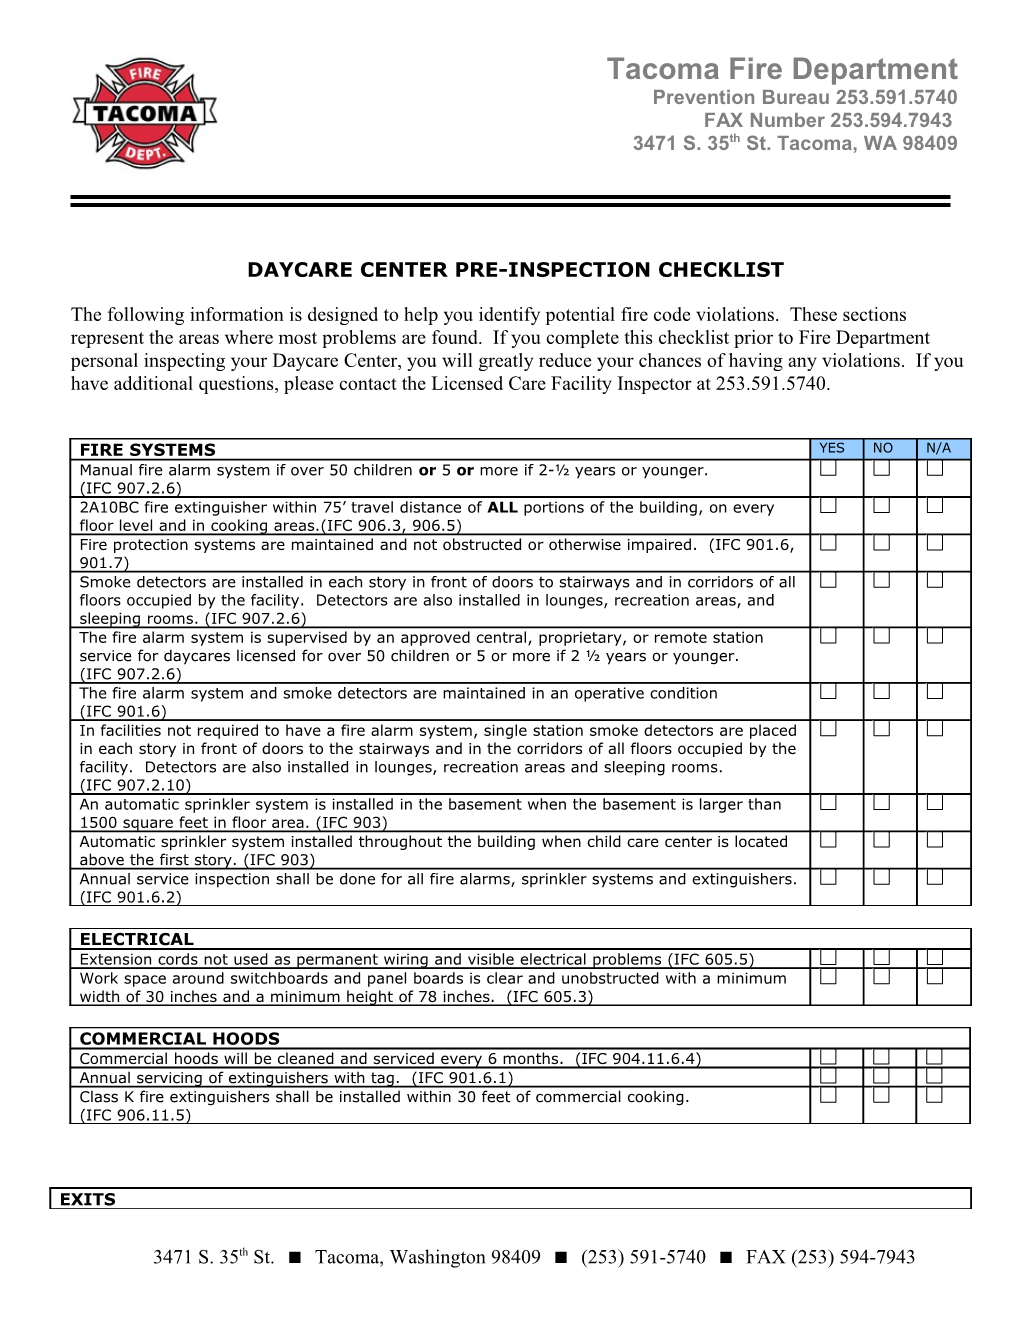 Daycarecenterpre-Inspection Checklist